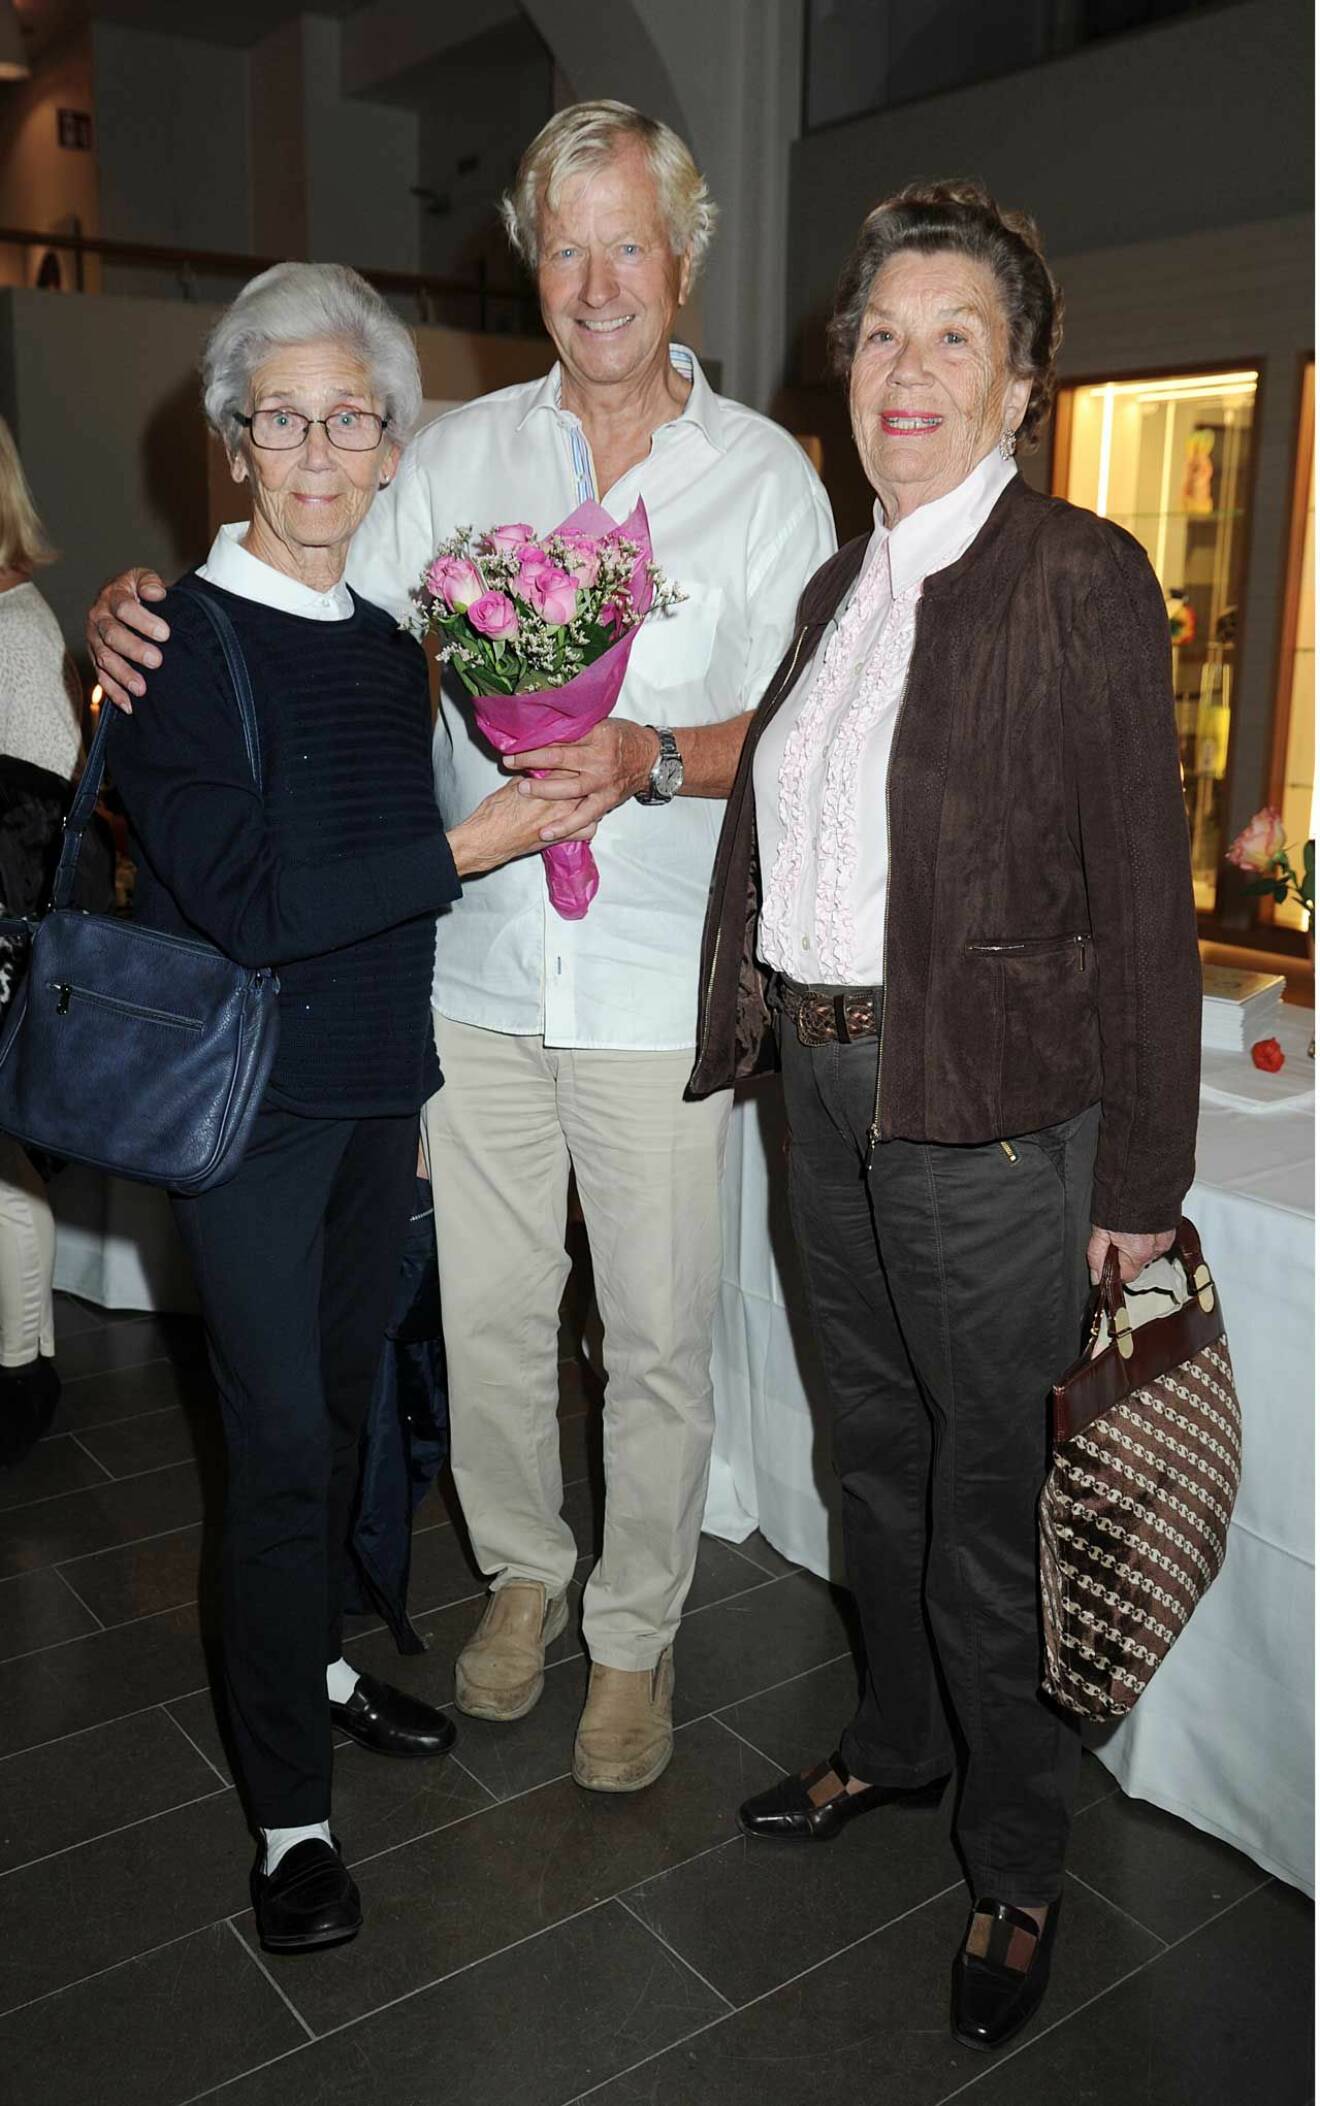 Med vackra blommor kom också denna trio. Professor Kerstin Hagenfeldt, advokat Björn Hagenfeldt och Monica Hagenfeldt.